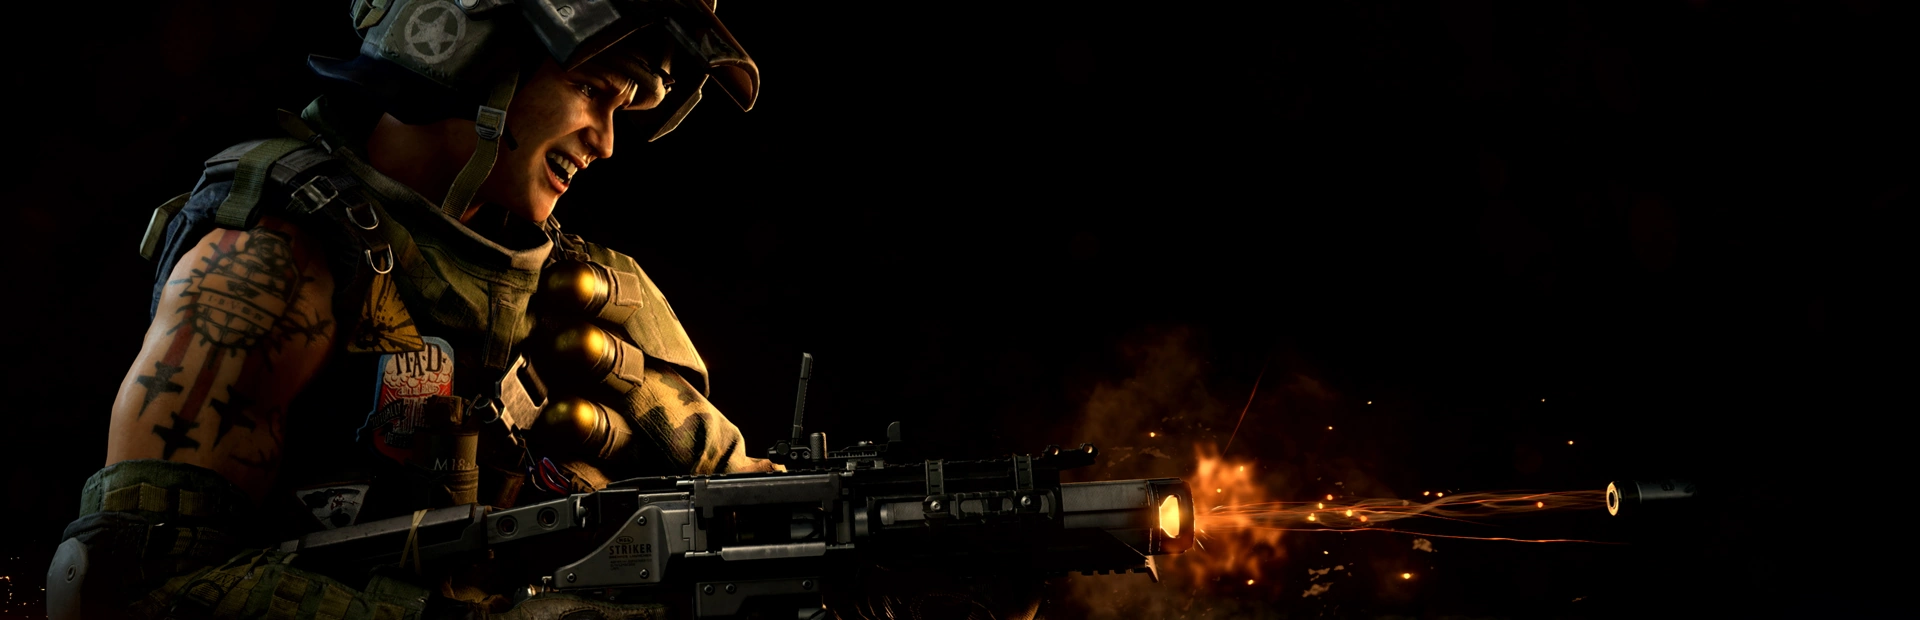 دانلود بازی Call of Duty: Black Ops 4 برای pc | گیمباتو